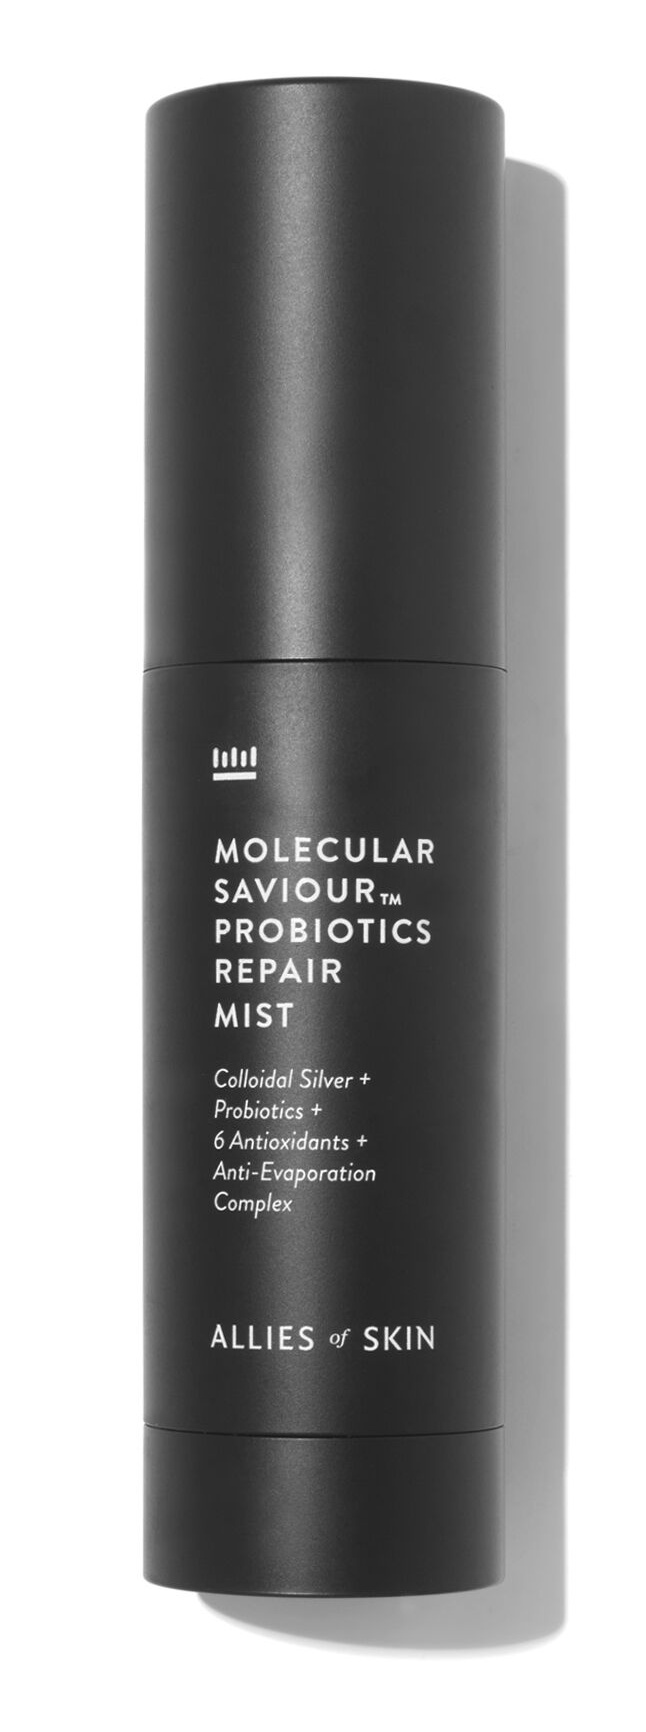 Allies of Skin Molecular Saviour™ Probiotics Treatment Mist